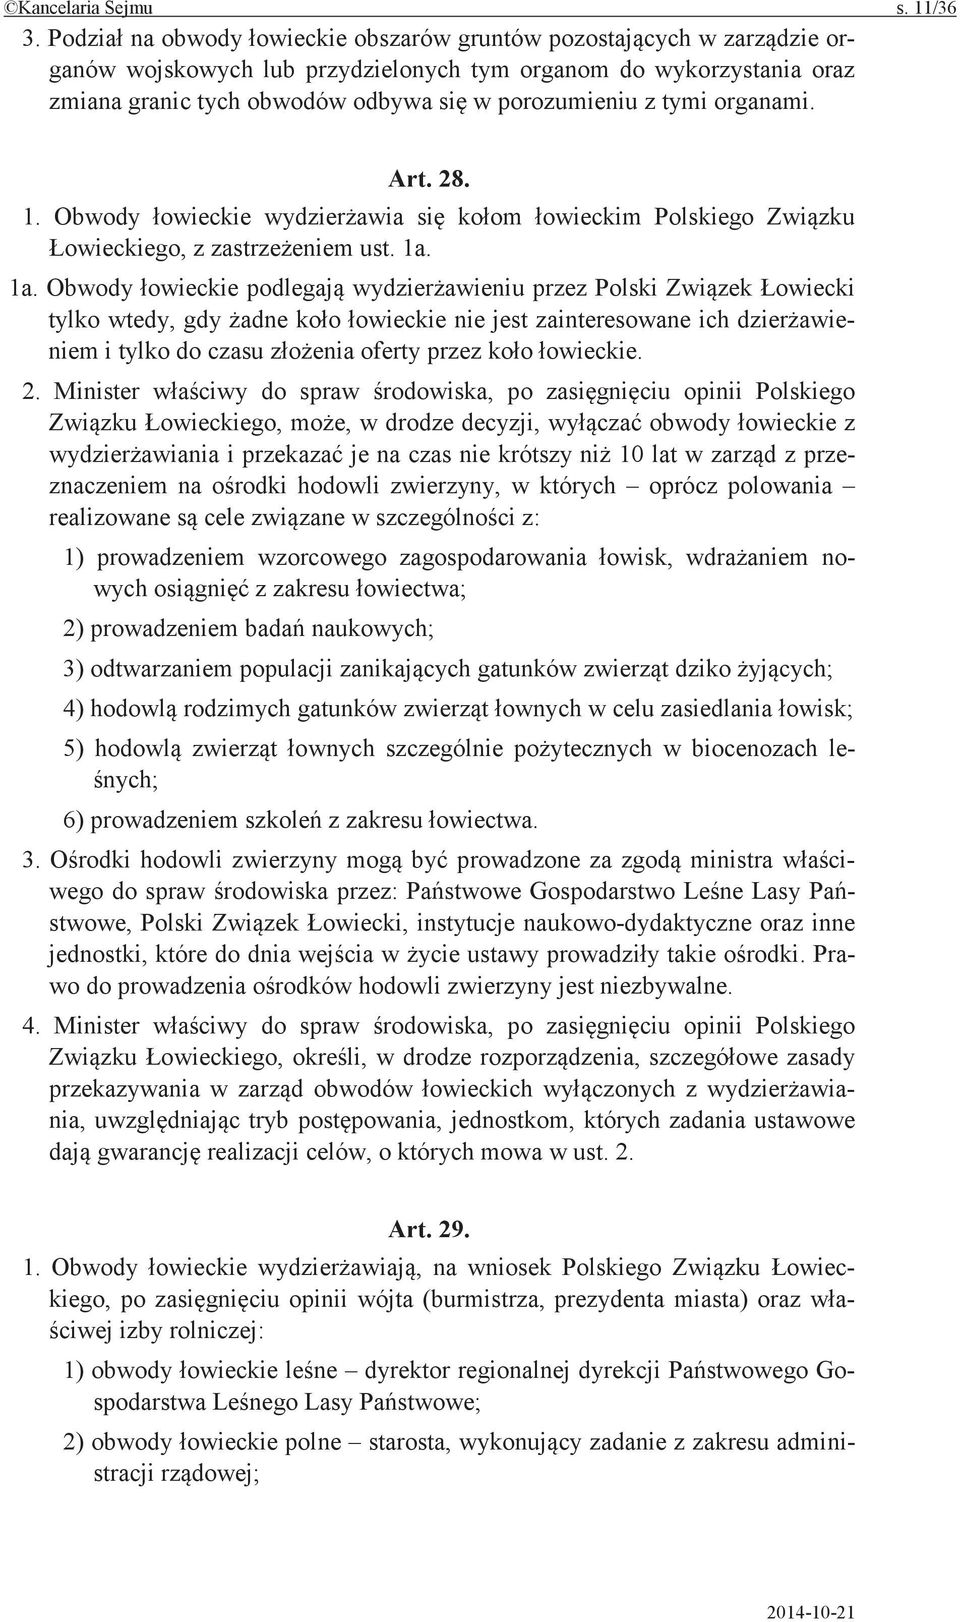 Minister do spraw po opinii Polskiego w drodze decyzji, obwody z i je na czas nie krótszy 10 lat w z przeznaczeniem na hodowli zwierzyny, w których oprócz polowania realizowane cele w z: 1)